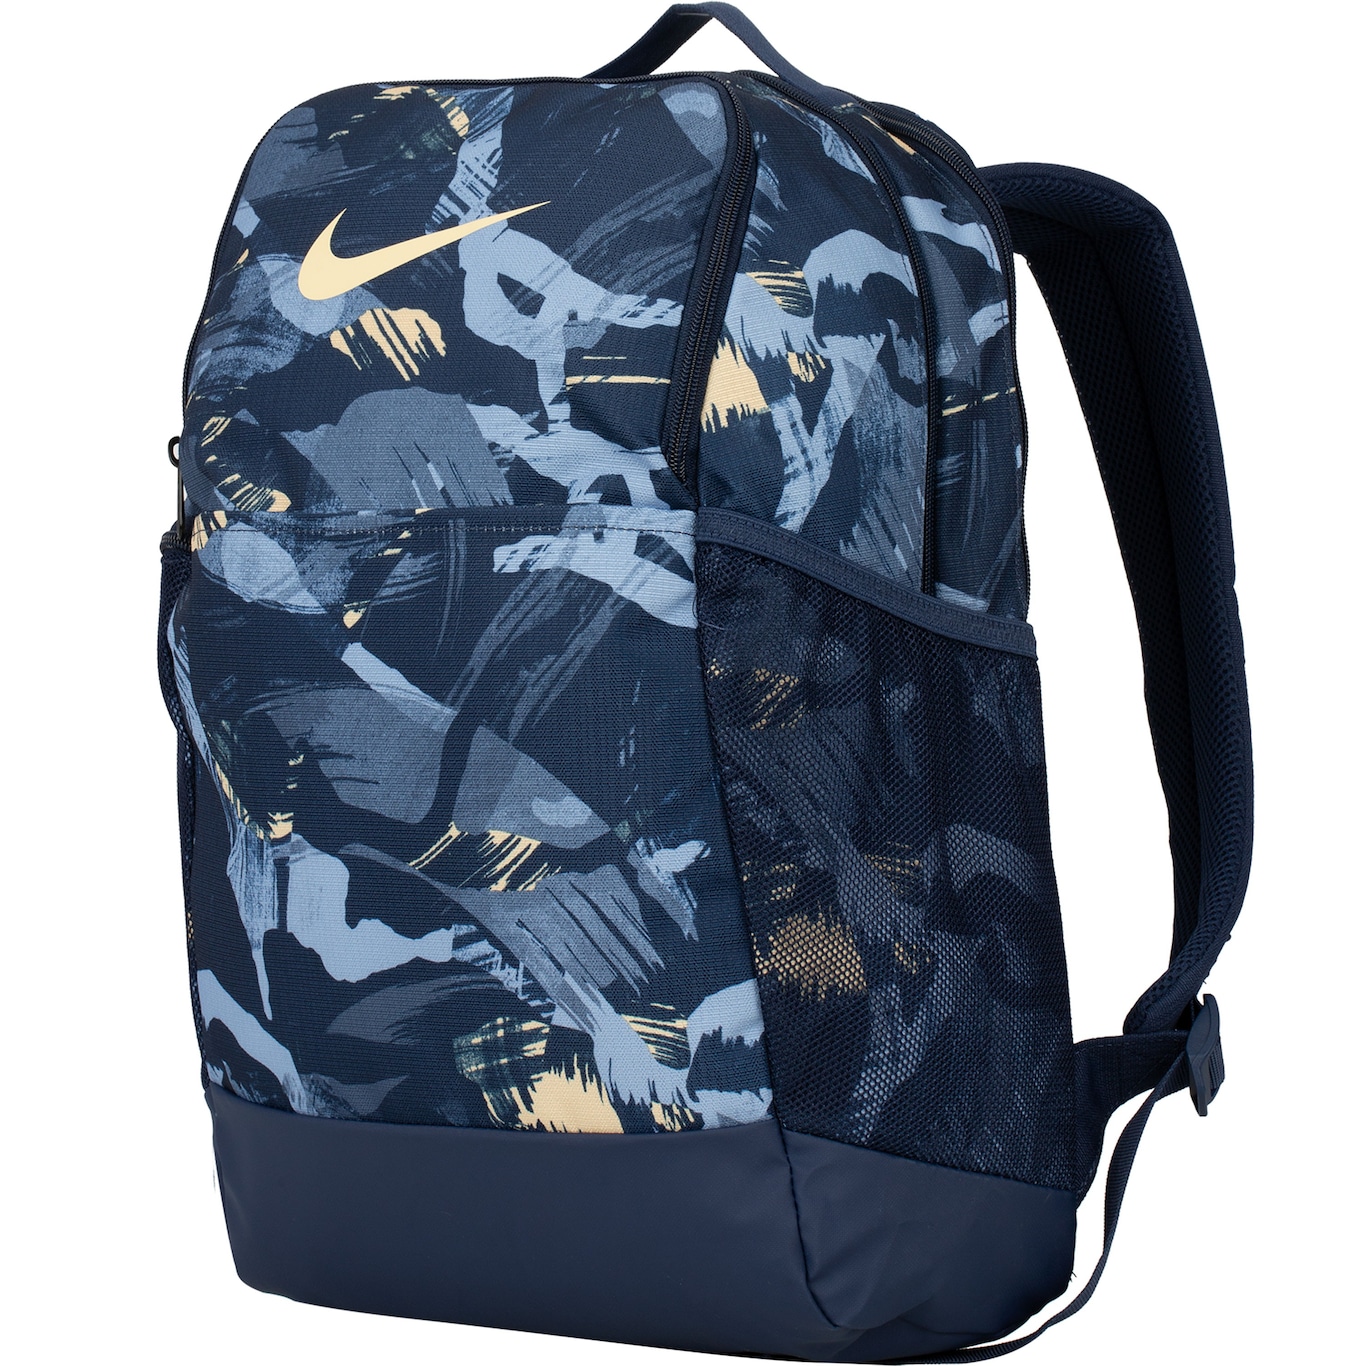 Nike Brasilia XL 9.5 Backpack